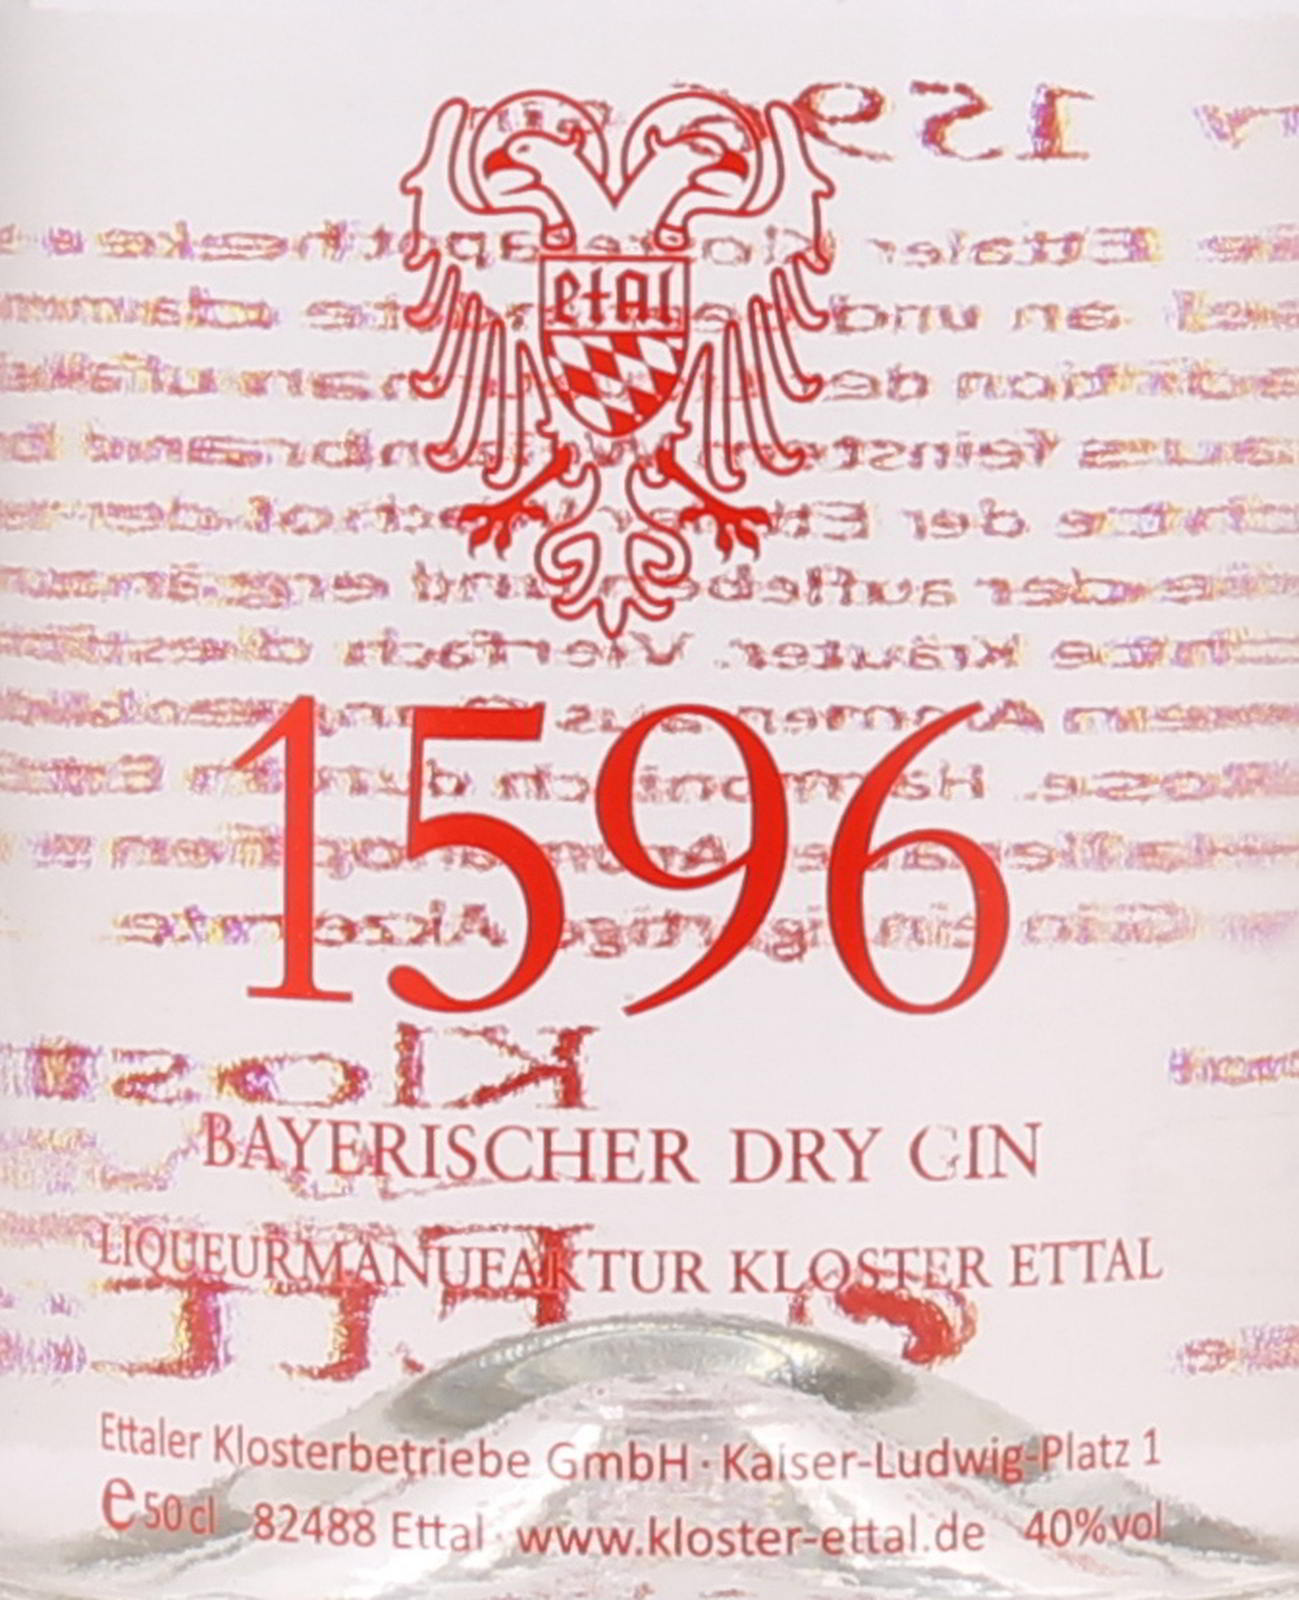 40 Gin ei Liter Vol. Dry Bayerischer Ettaler 0,5 1596 %